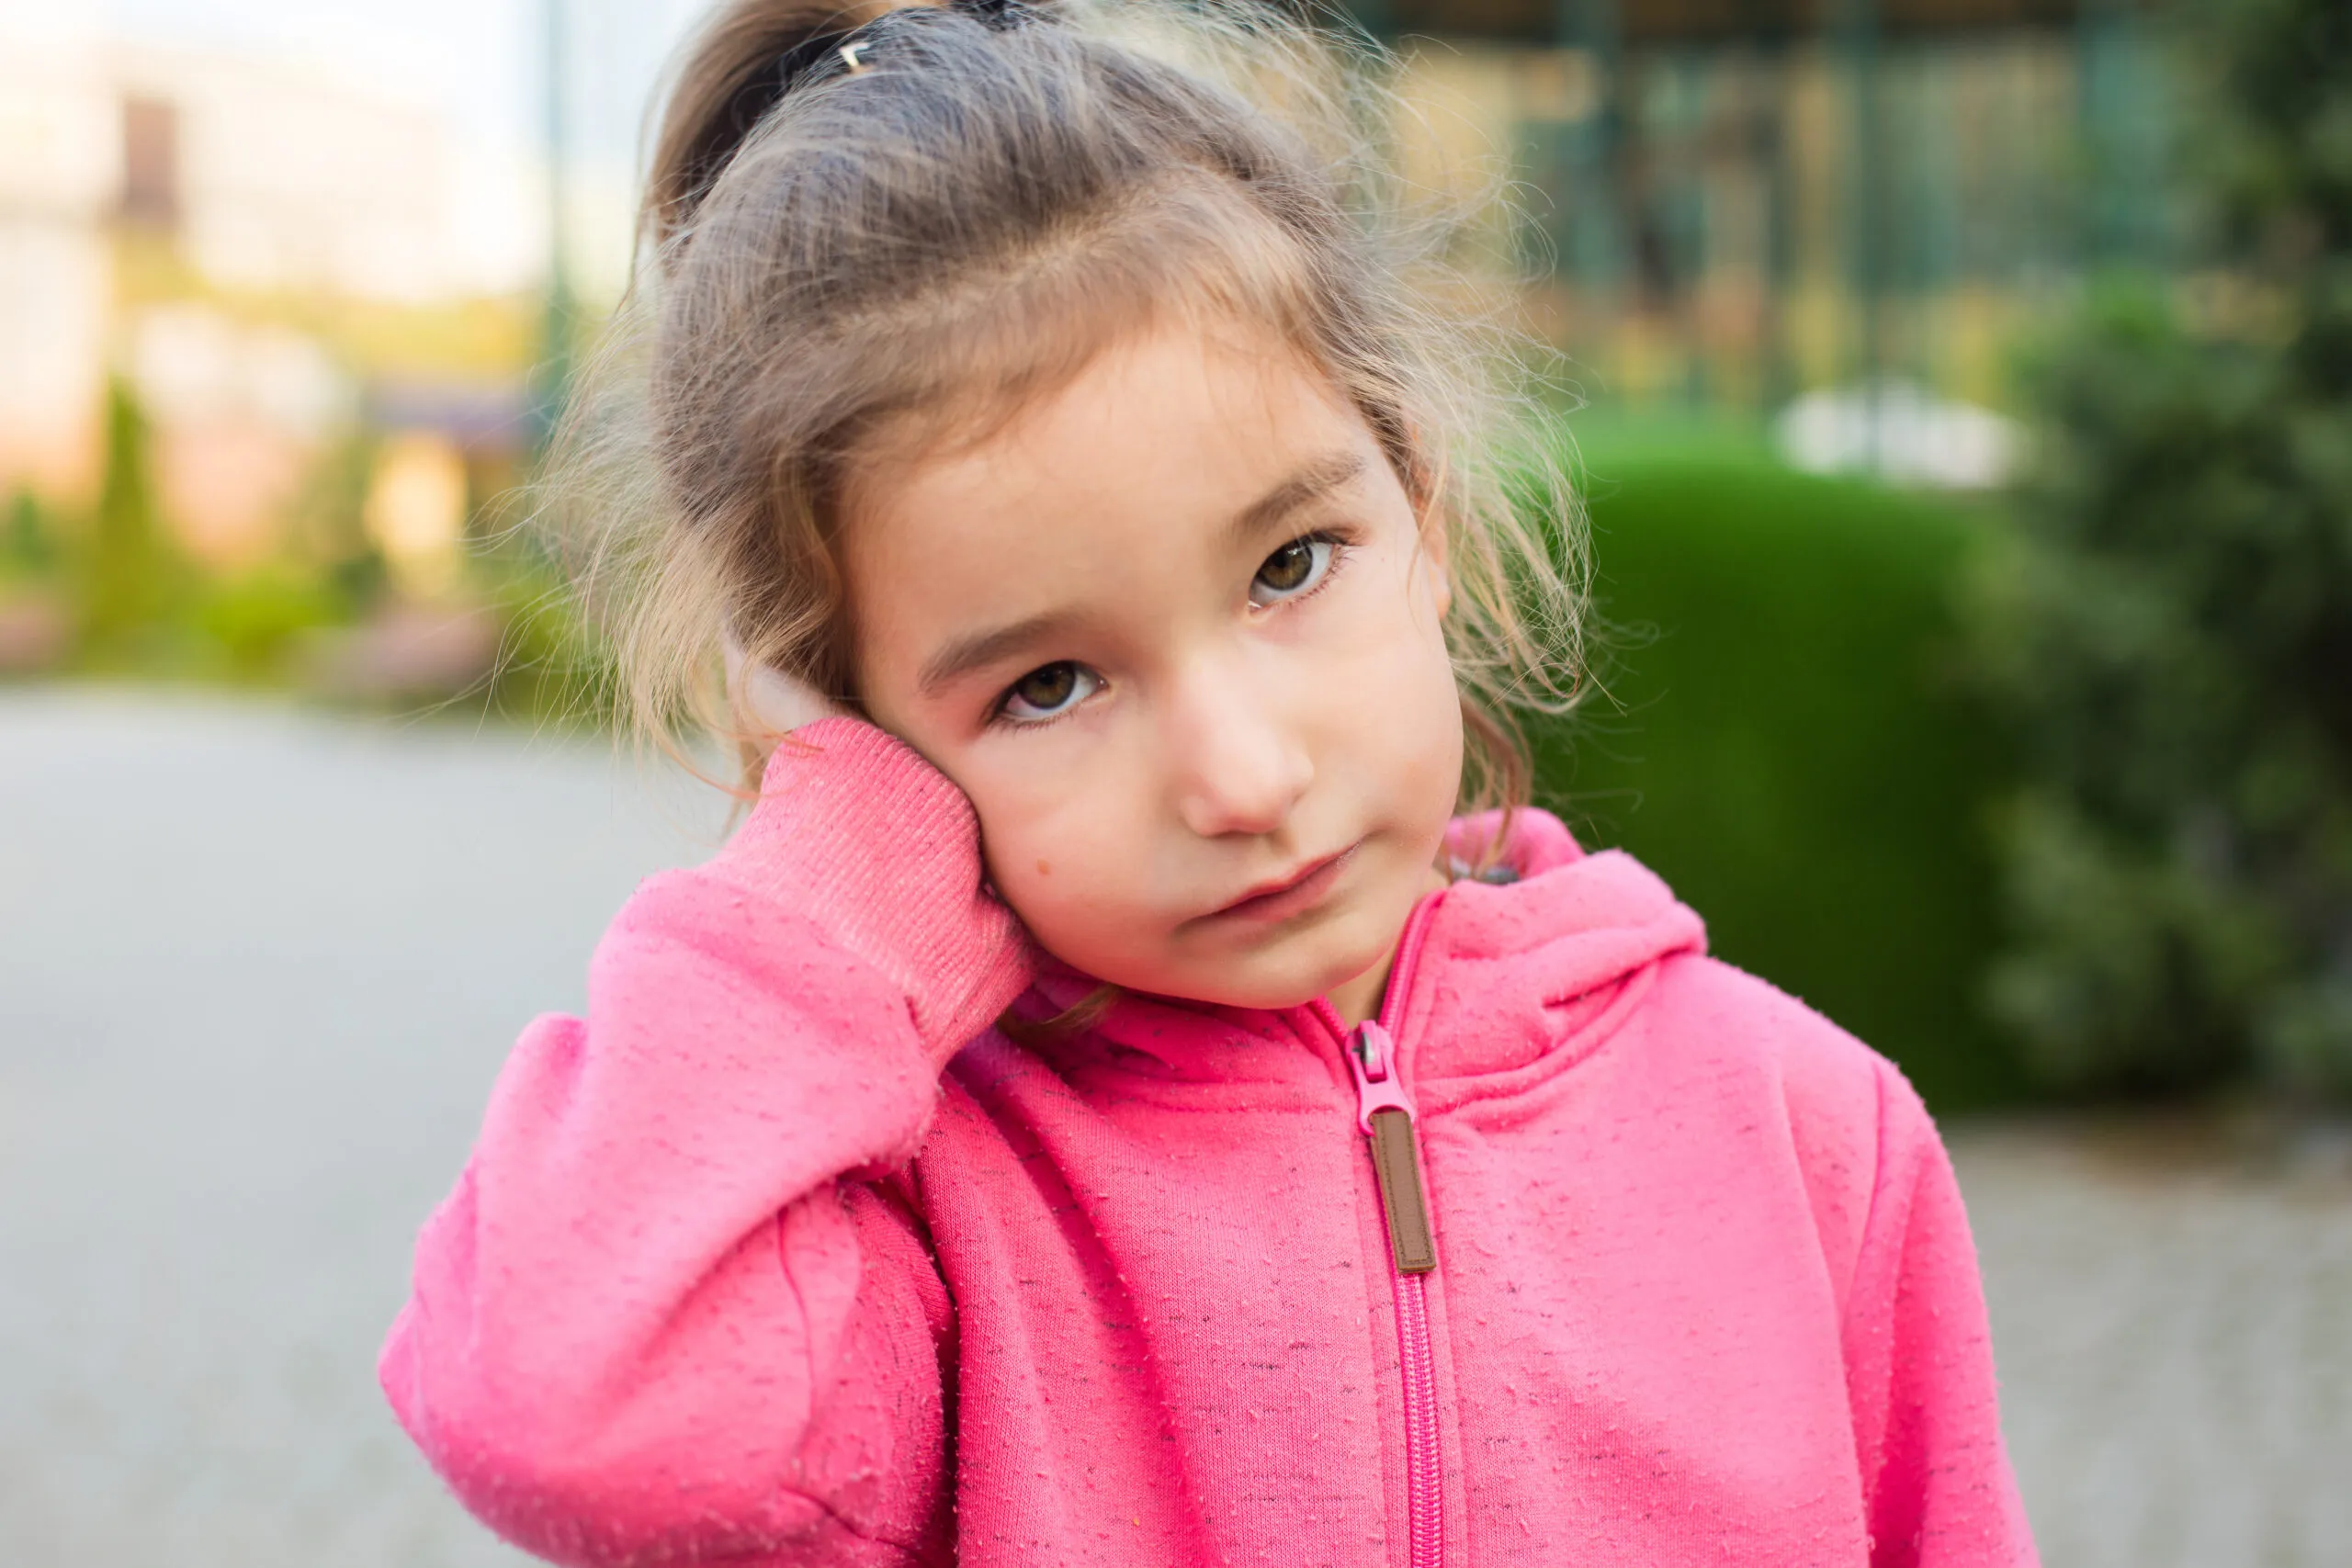 Conseils pour calmer l’infection douloureuse de l’oreille d’un enfant